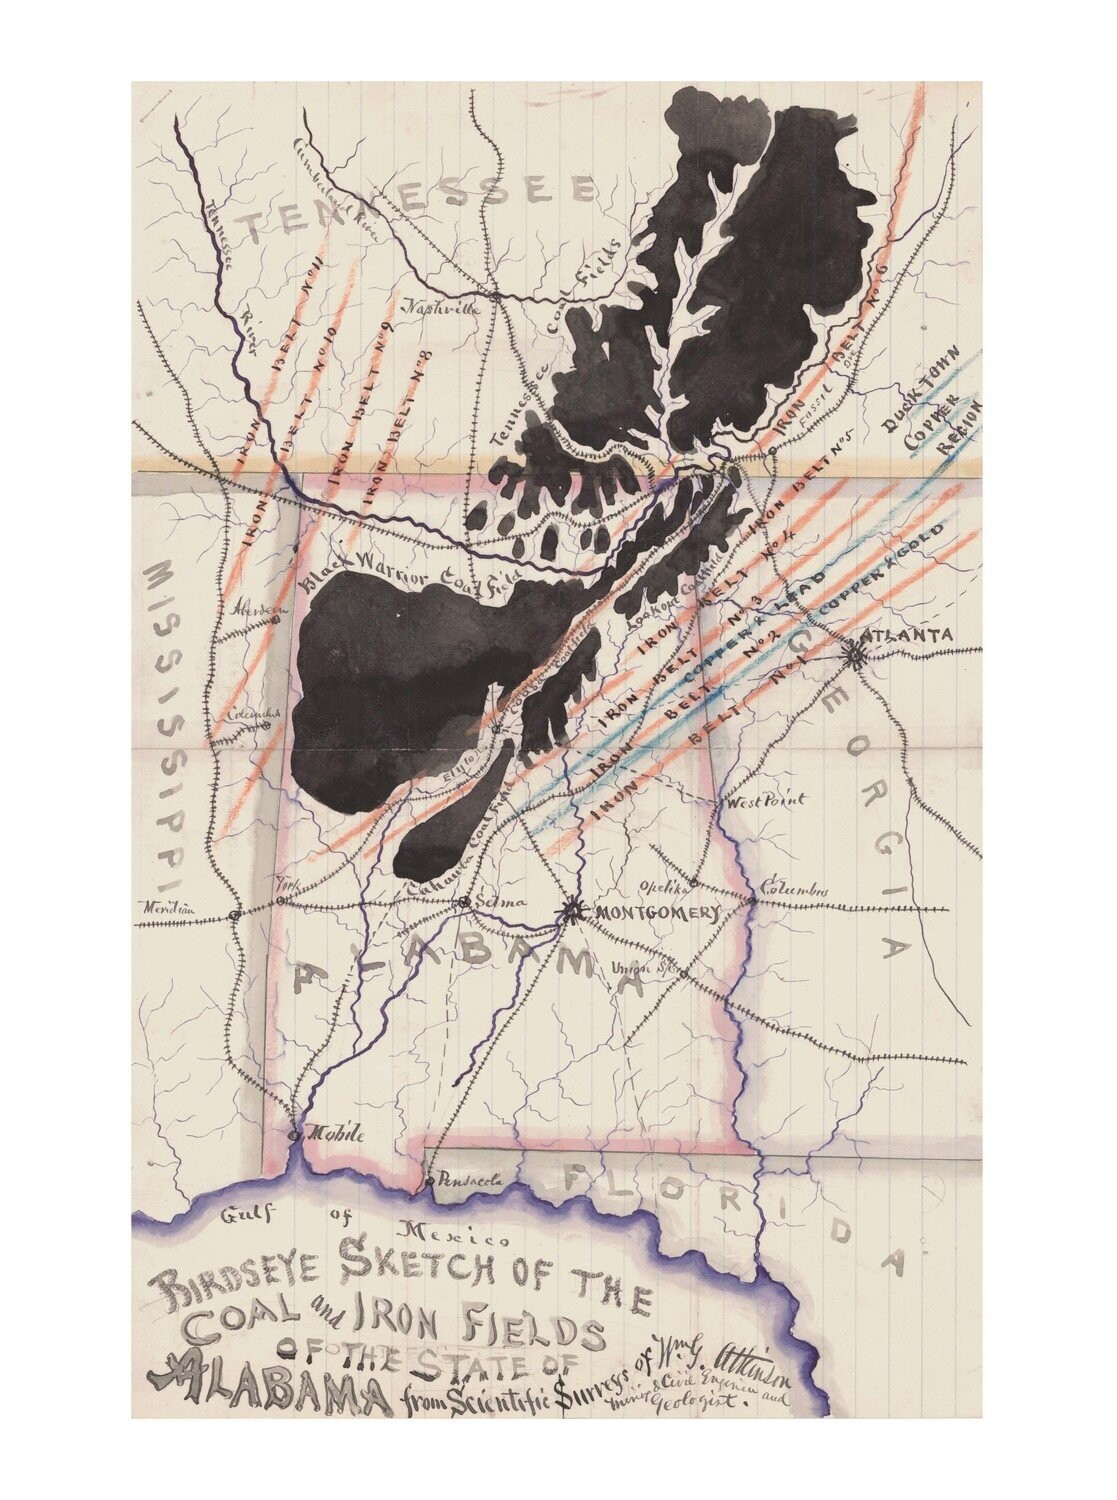 1872 Alabama Map of Coal and Iron Deposits